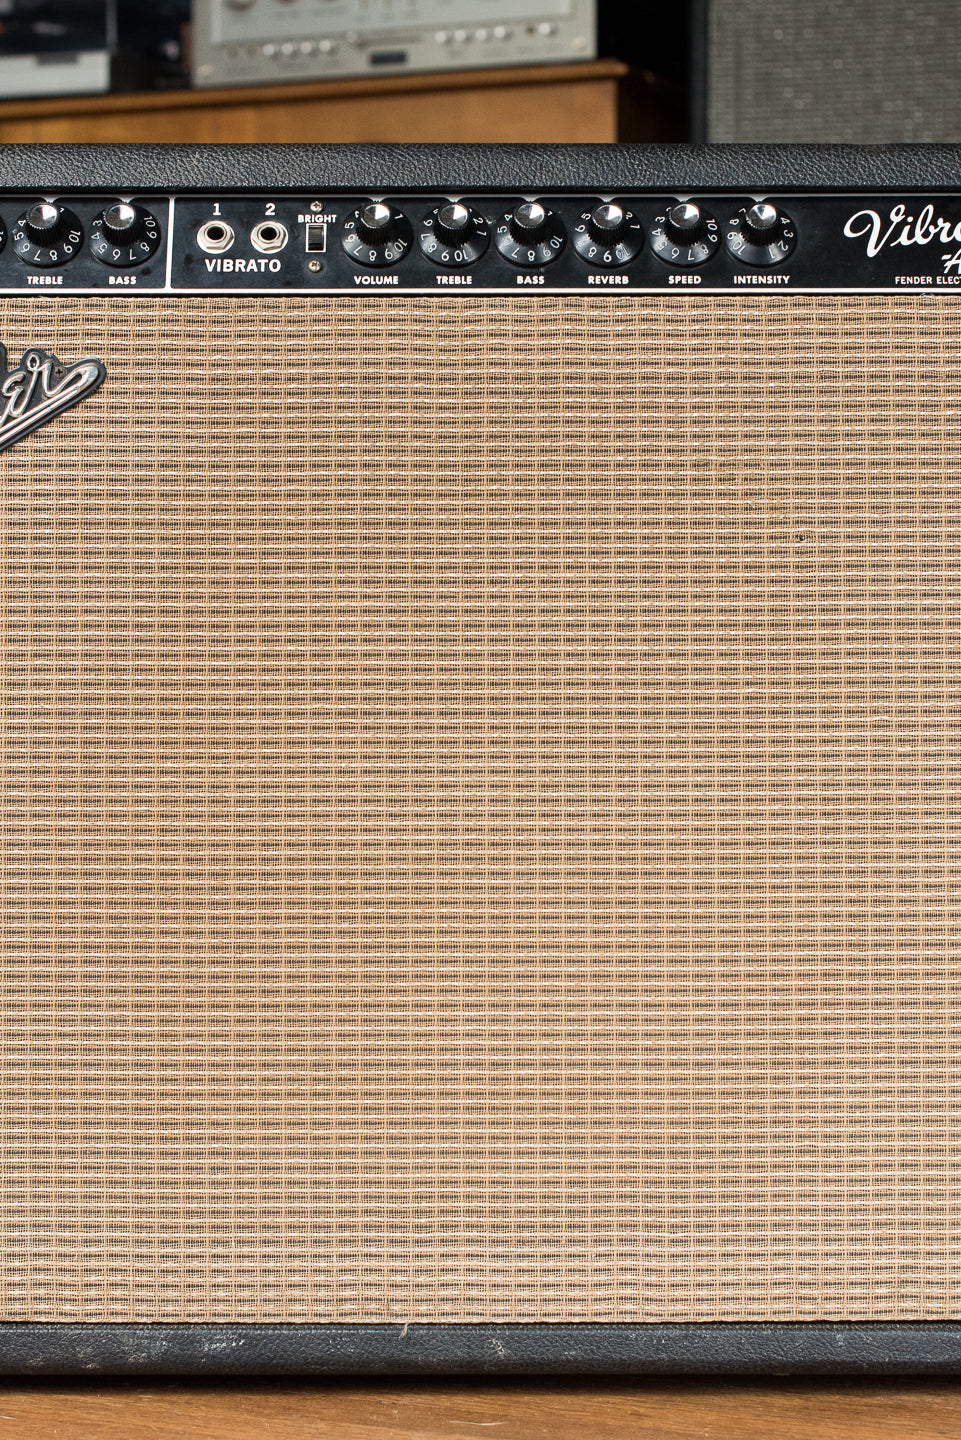 Vintage 1964 Fender Vibroverb guitar amplifier